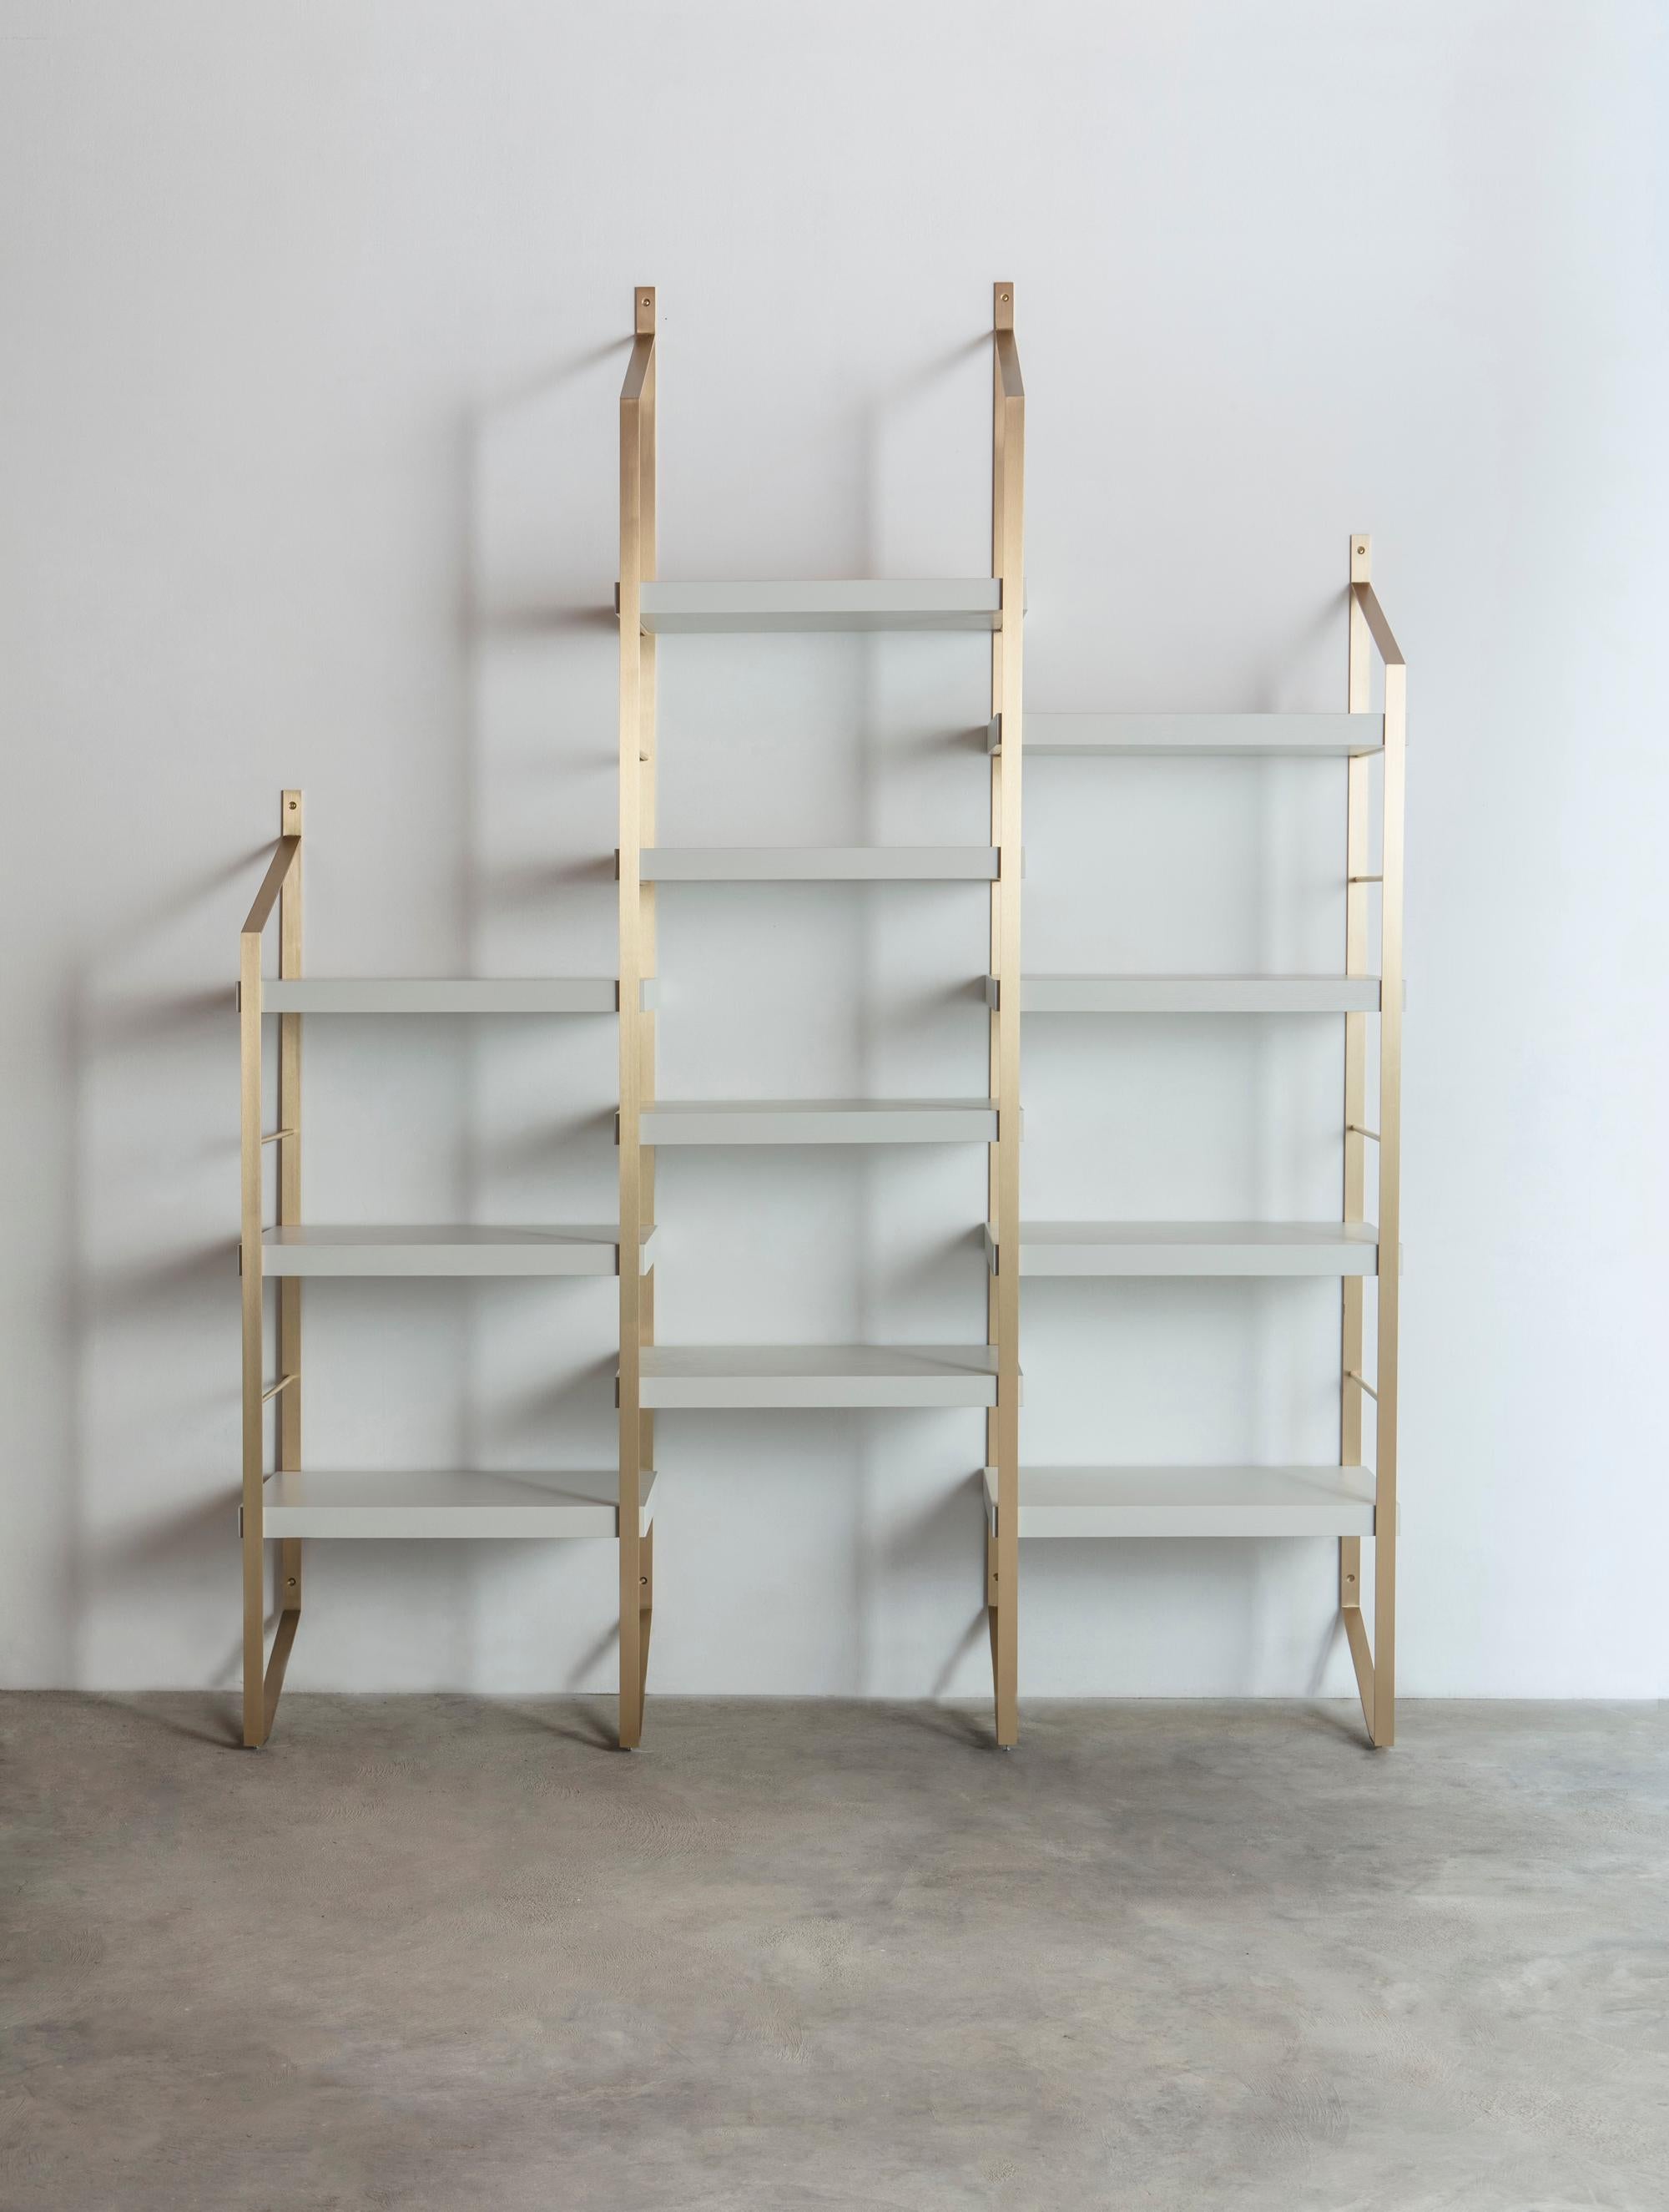 Step ist ein modulares Bücherregal mit Messingstruktur, bestehend aus geschweißtem Metall
Platte und Röhren. Drei verschiedene Höhen der Säulen ermöglichen eine Vielzahl von
von Kompositionen. Die Regale werden durch einfache Verbindungen